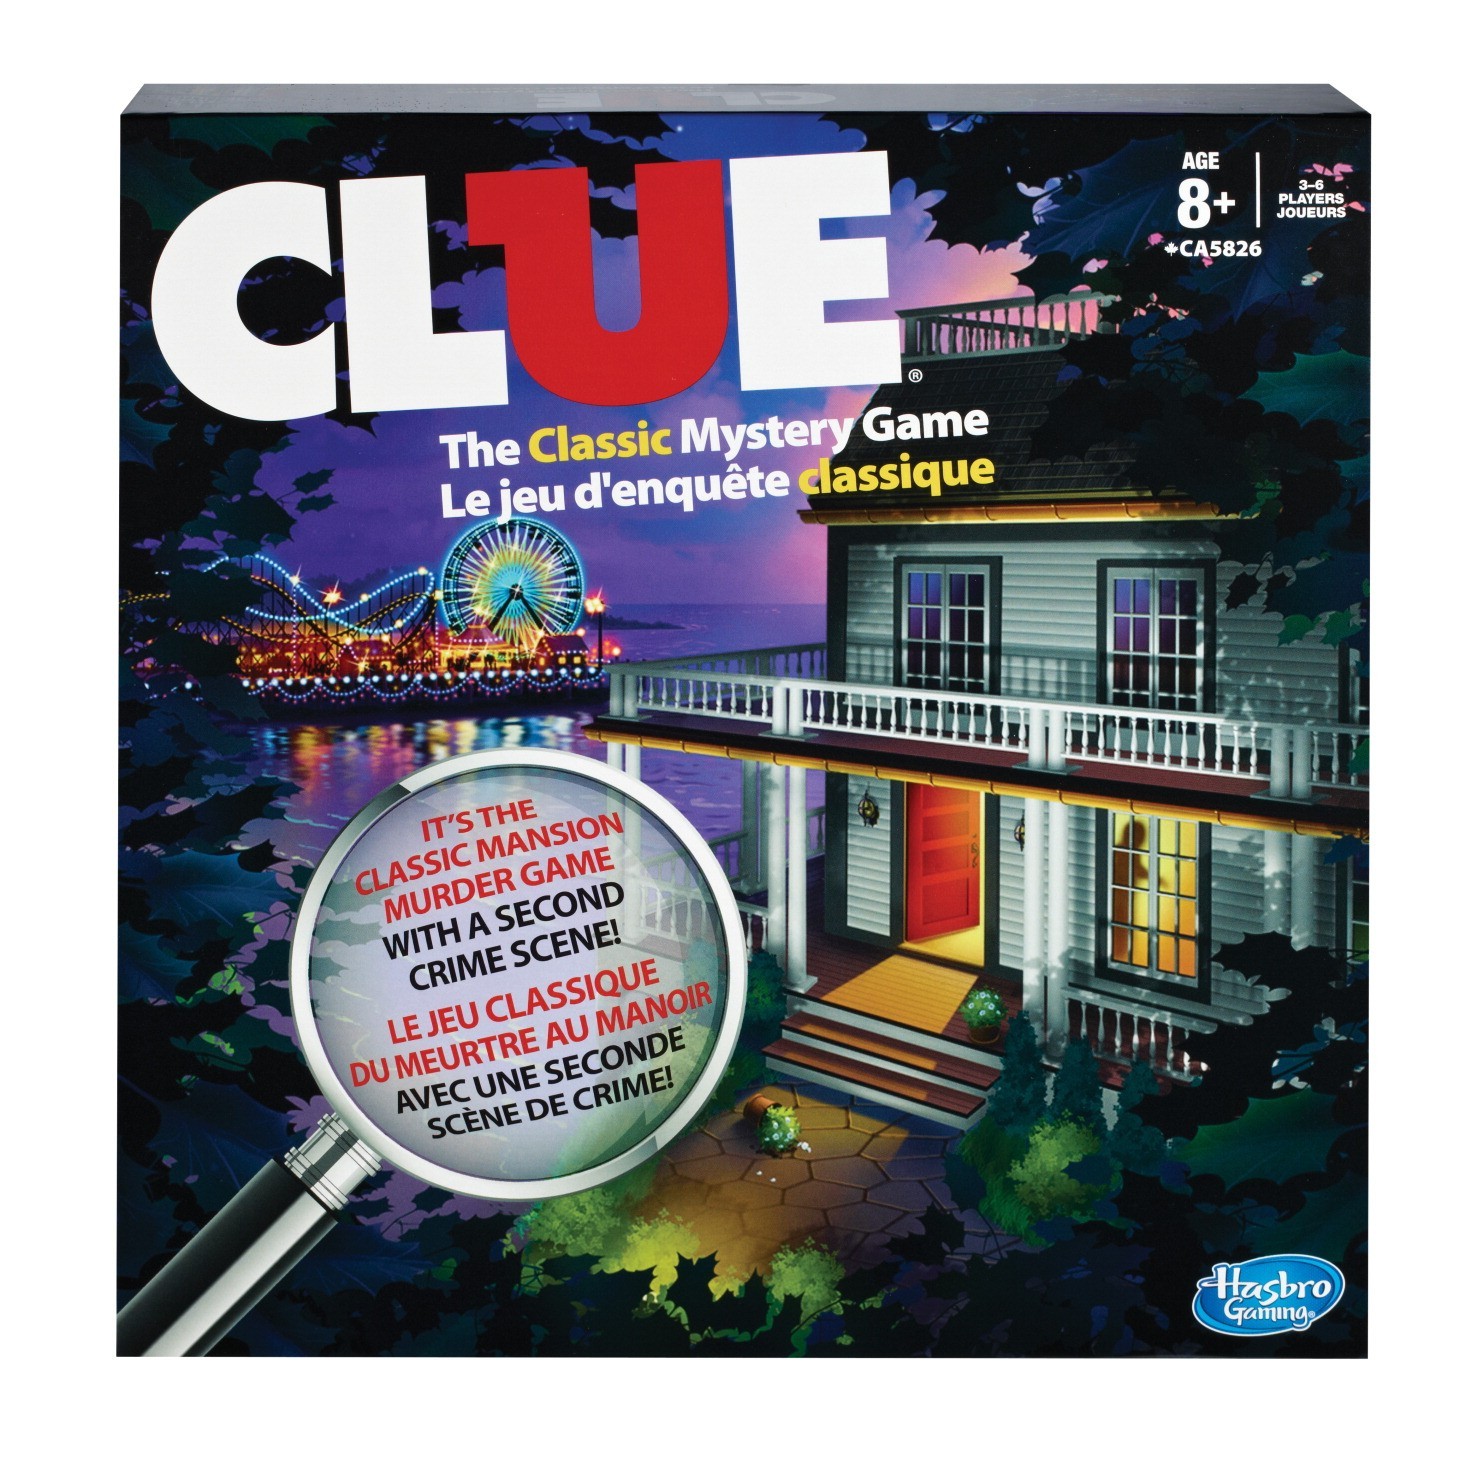 Clue - Board Game